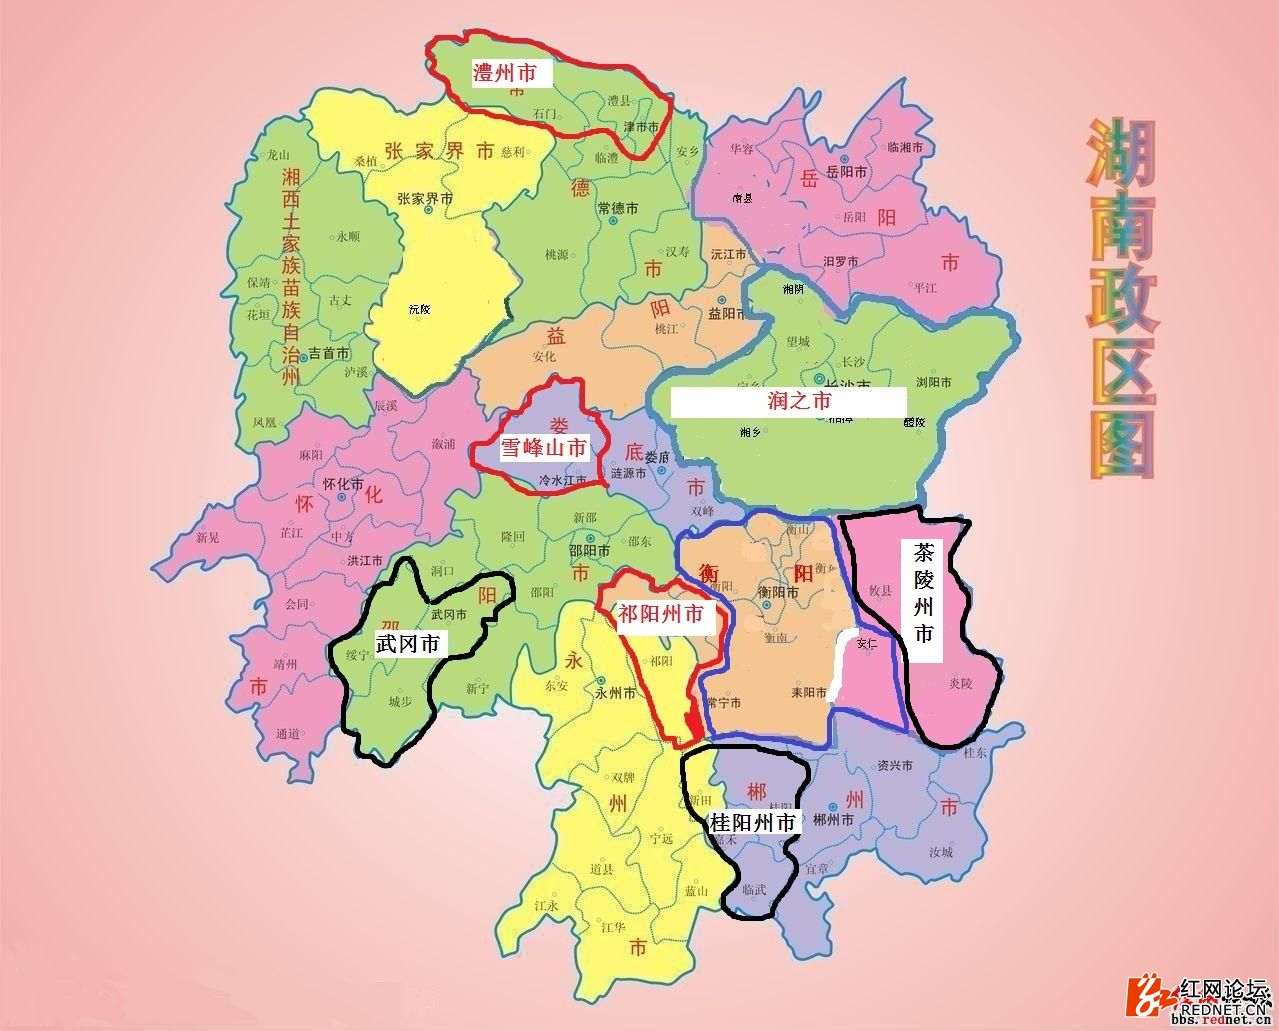 2017年湖南省最新行政区域划分和详细调整